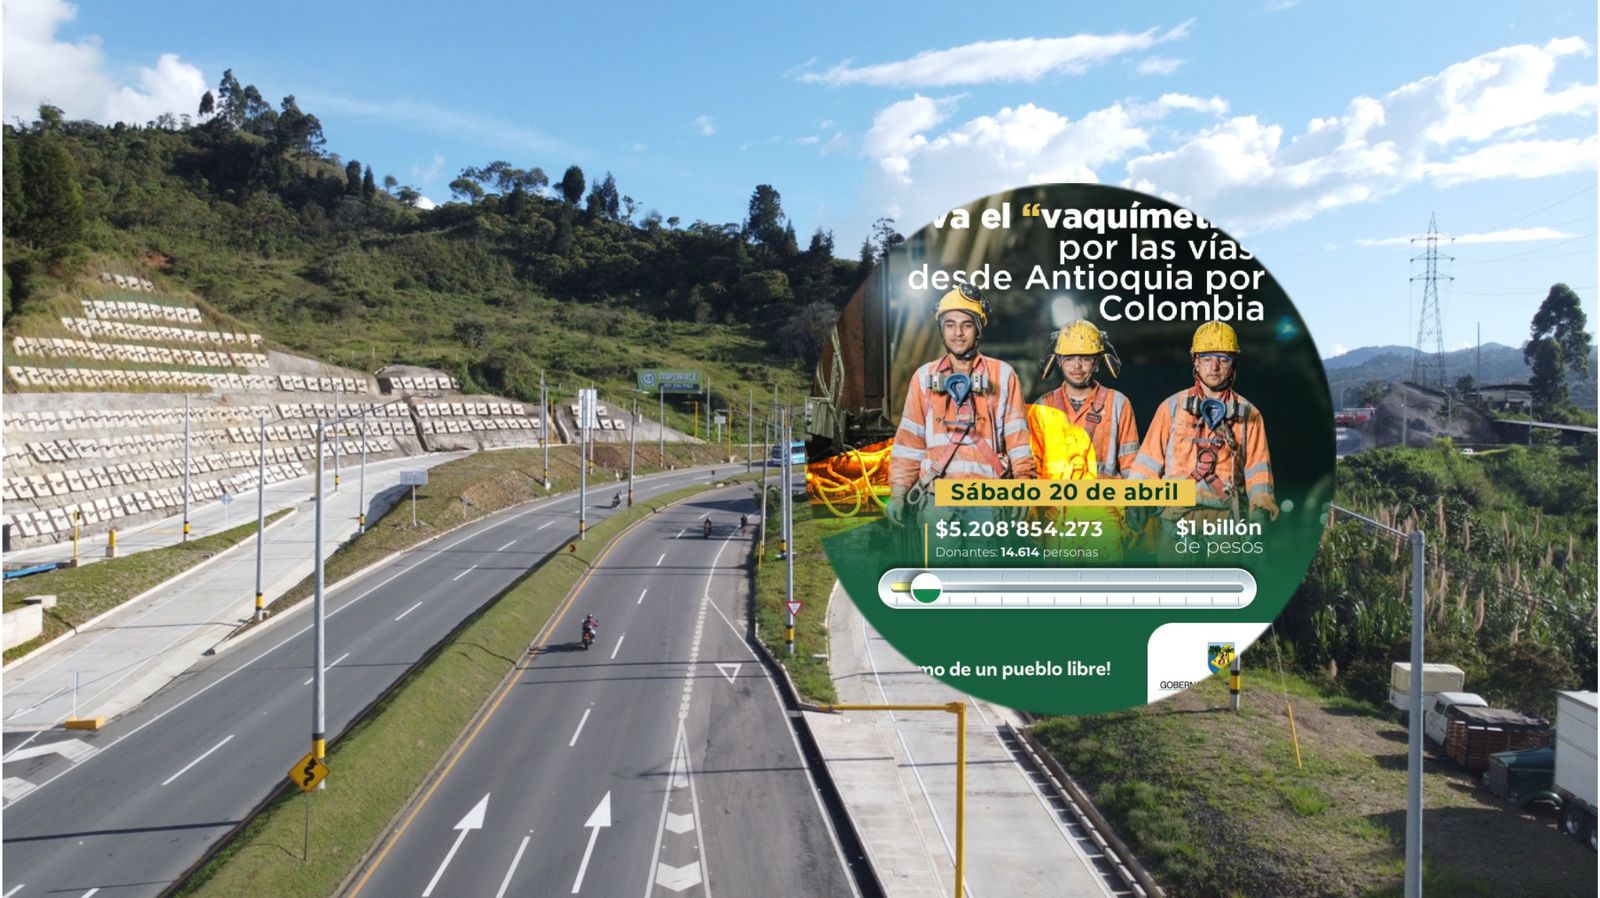 Así va el vaquímetro por las vías de Antioquia